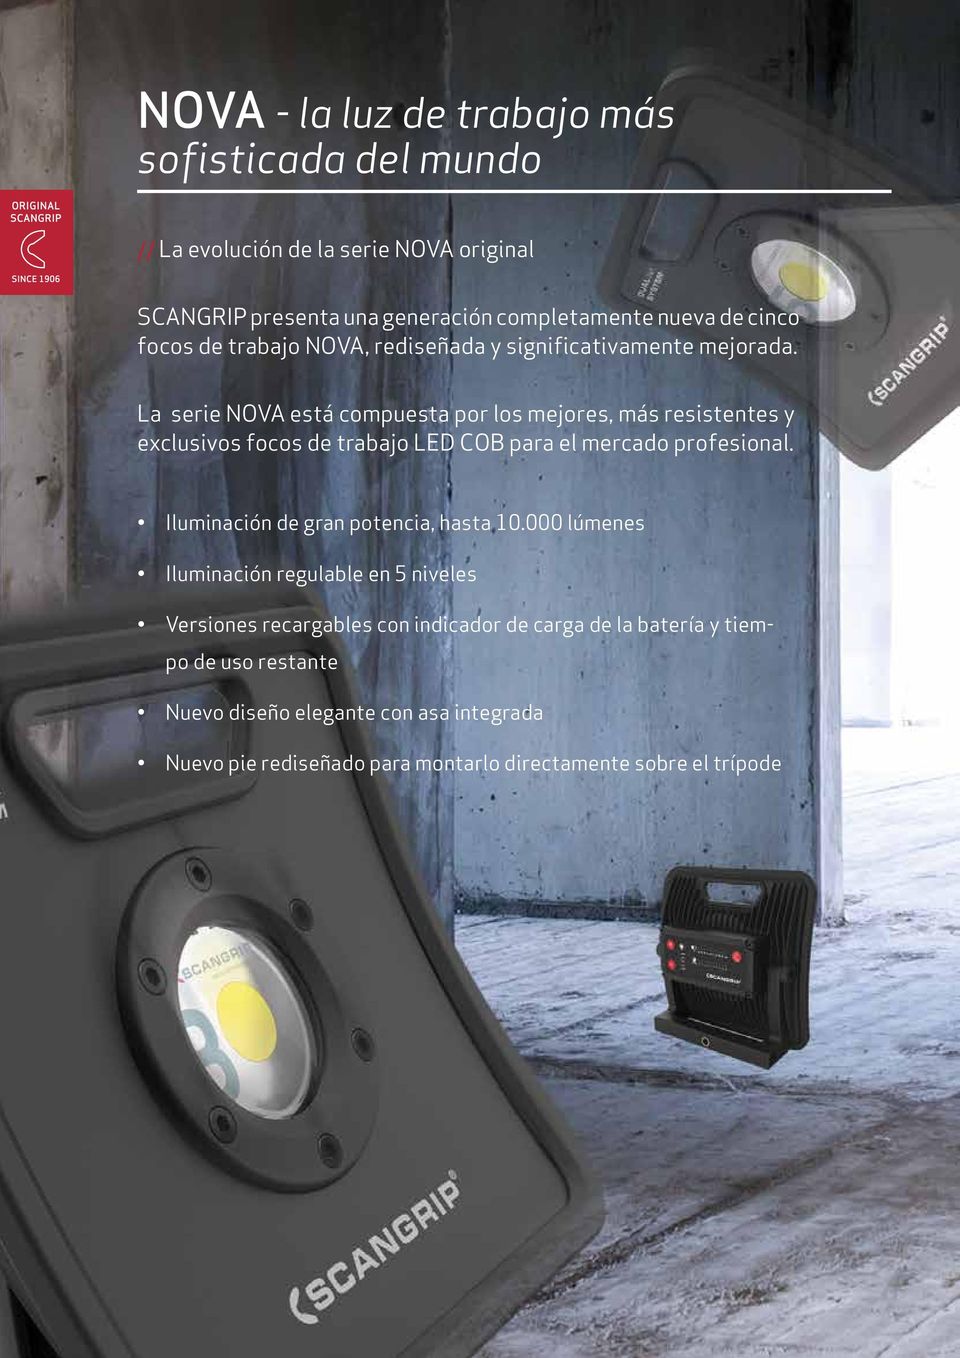 La serie NOVA está compuesta por los mejores, más resistentes y exclusivos focos de trabajo LED COB para el mercado profesional.